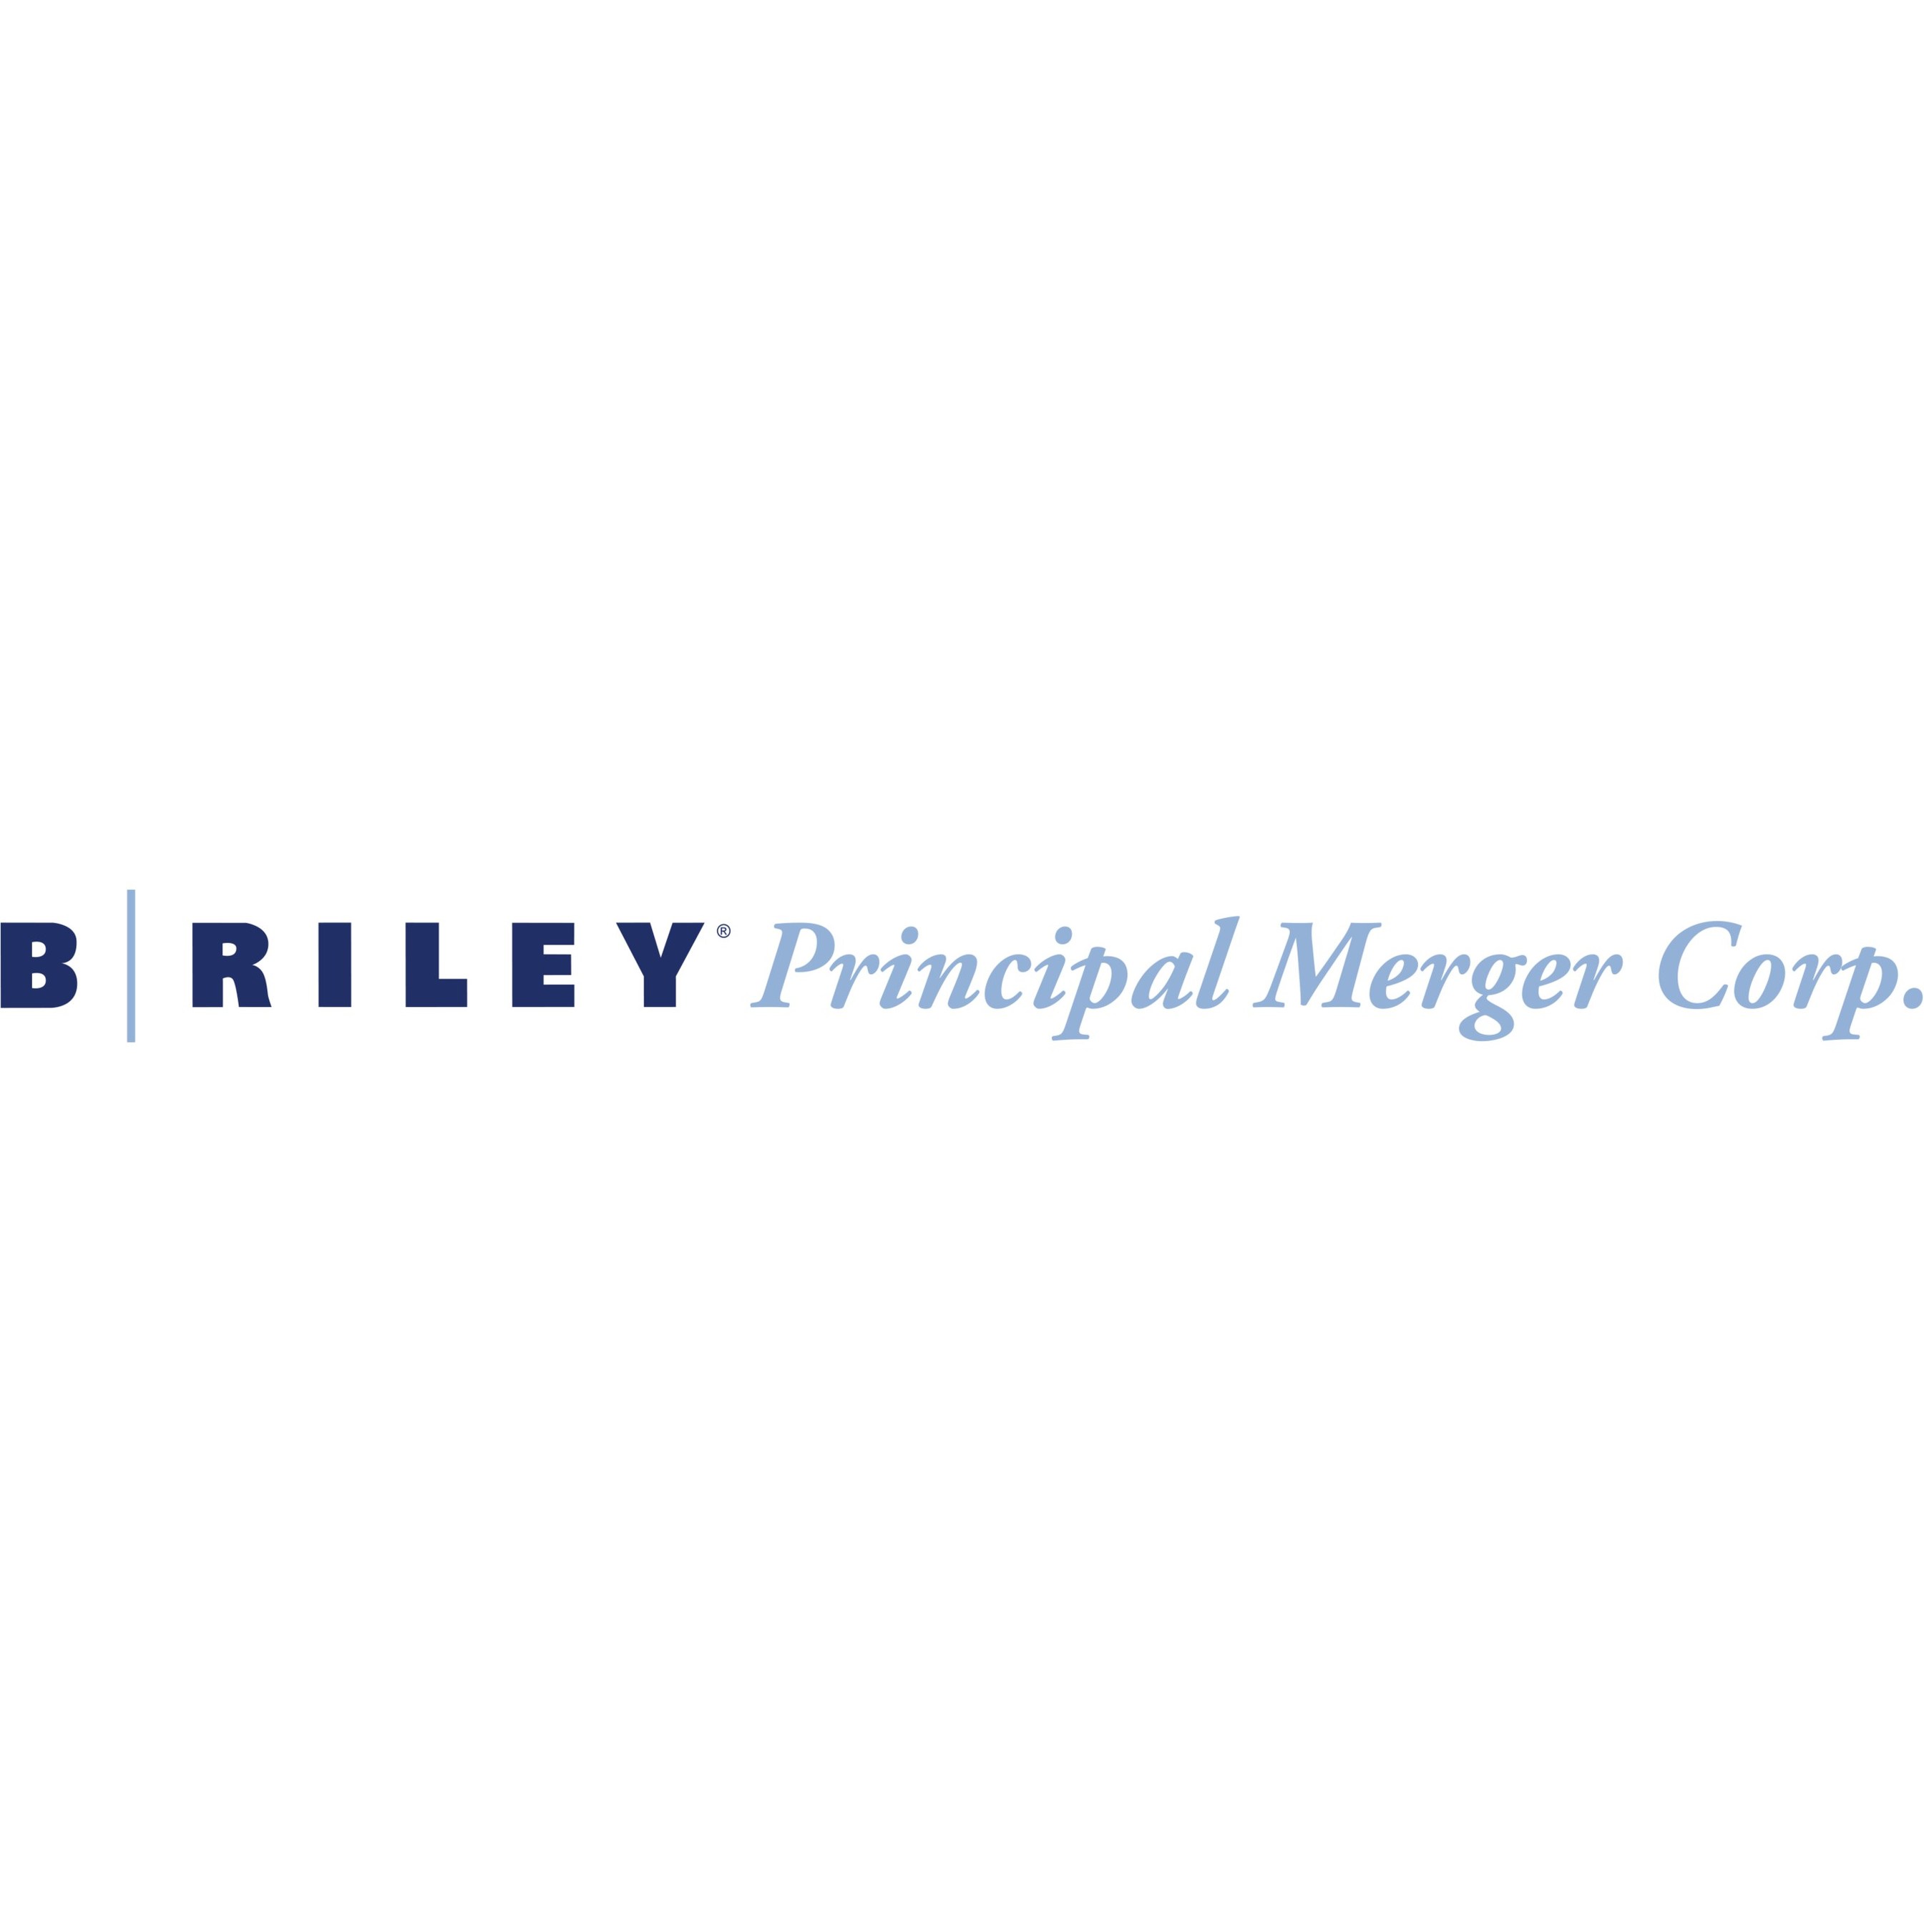 B. RILEY PRINCIPAL MERGER CORP II